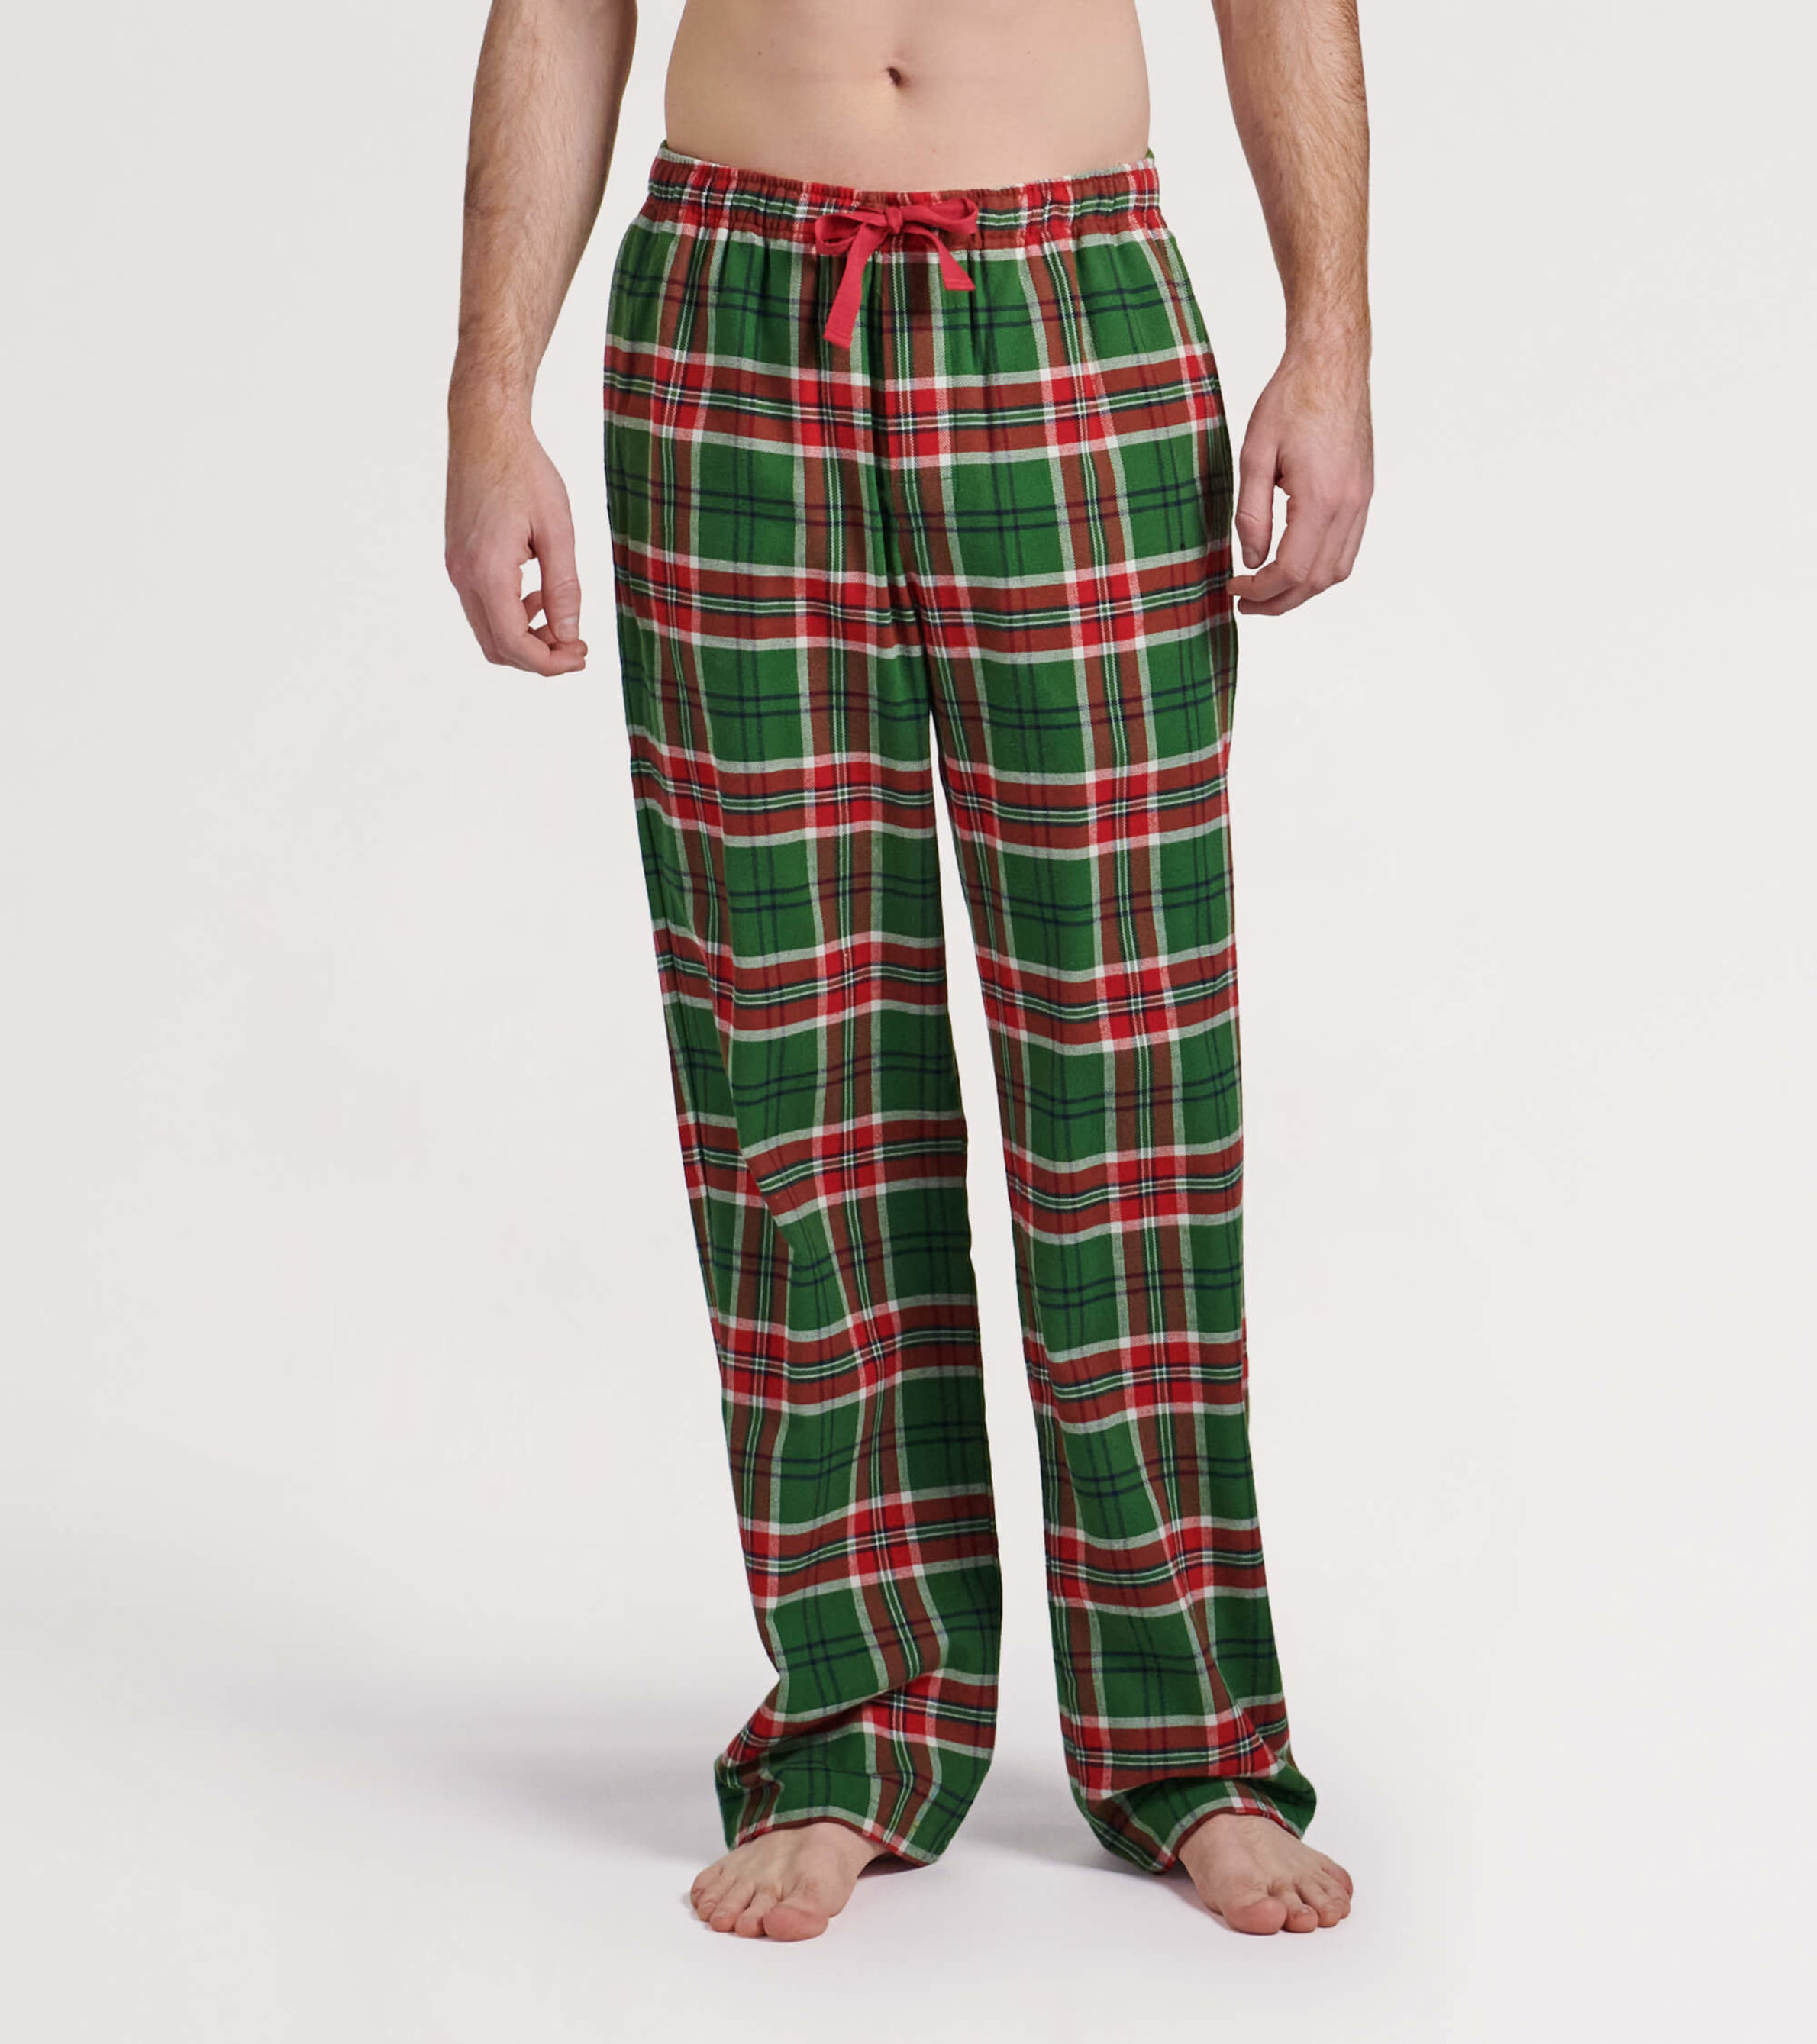 NORTY Mens Big Tall Pajama Pants Adult Male Christmas, 48% OFF